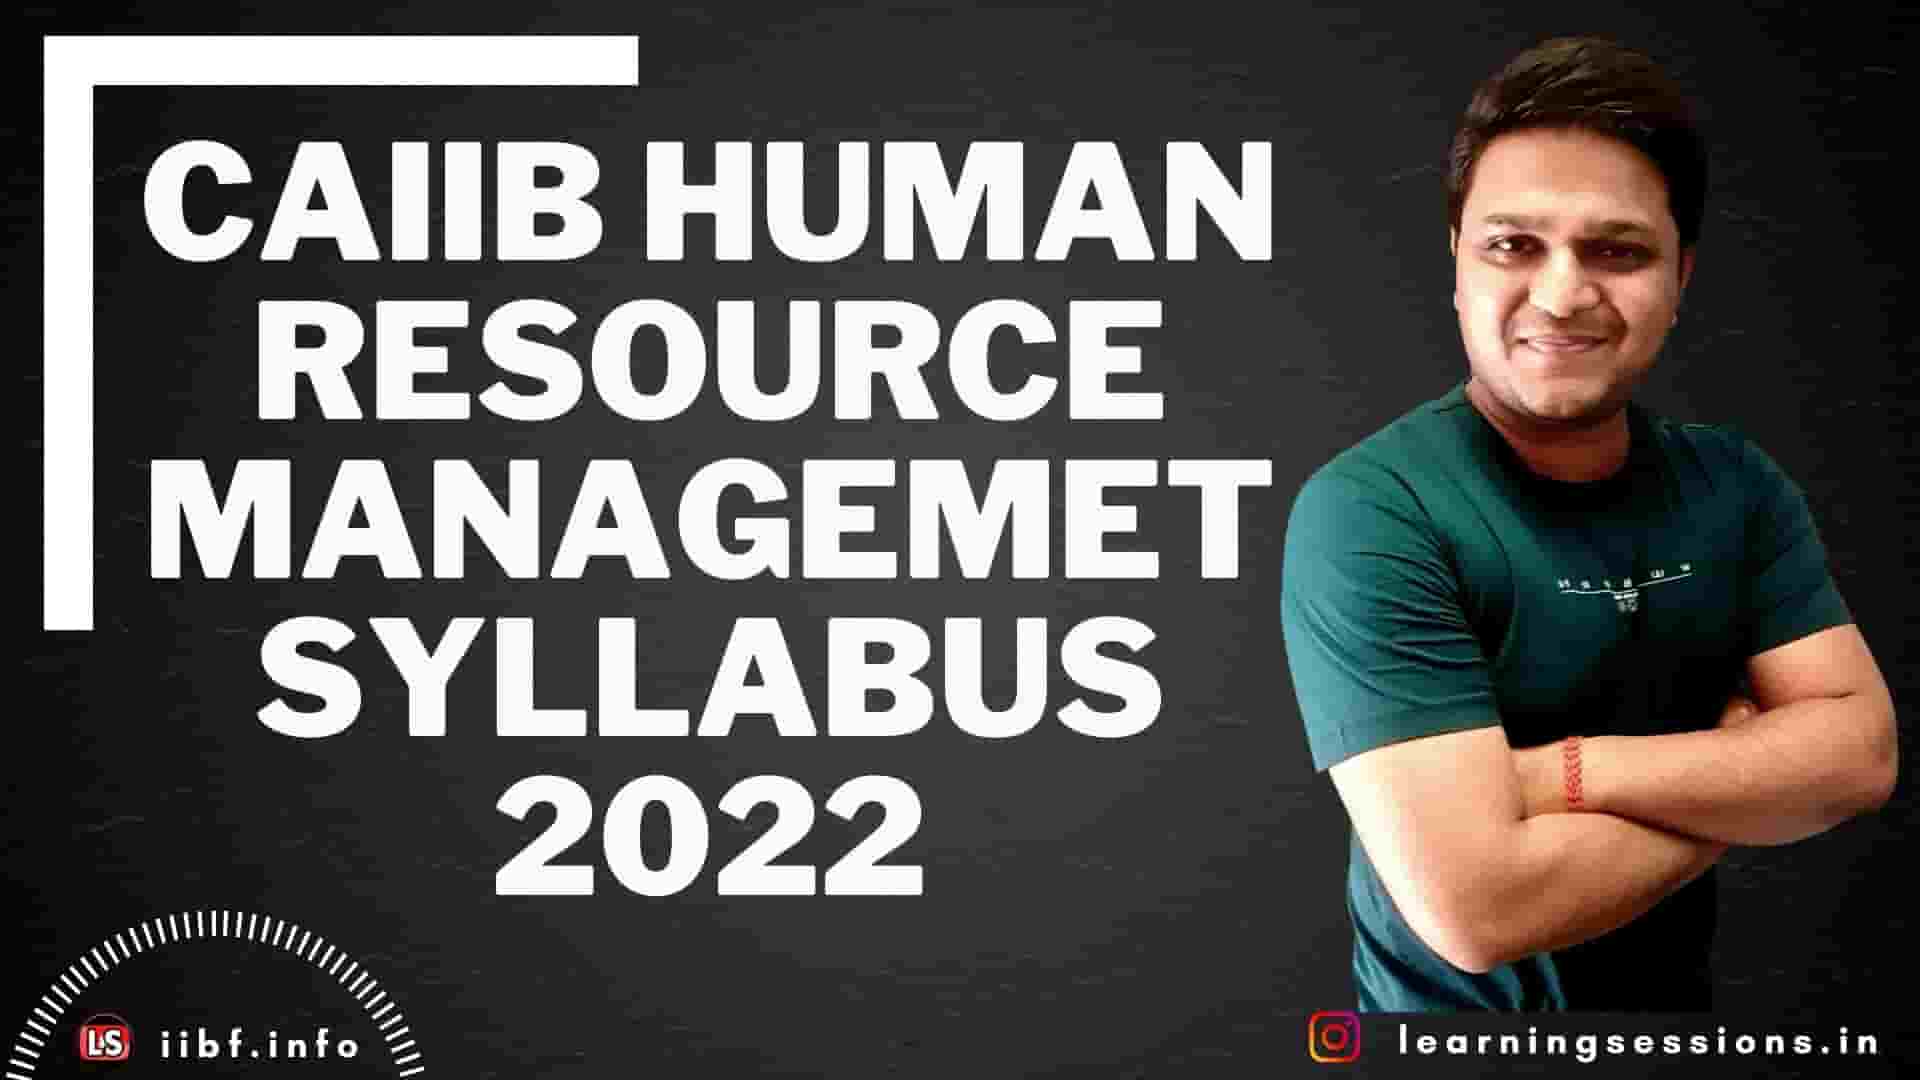 CAIIB HUMAN RESOURCE MANAGEMENT SYLLABUS 2022 – HRM